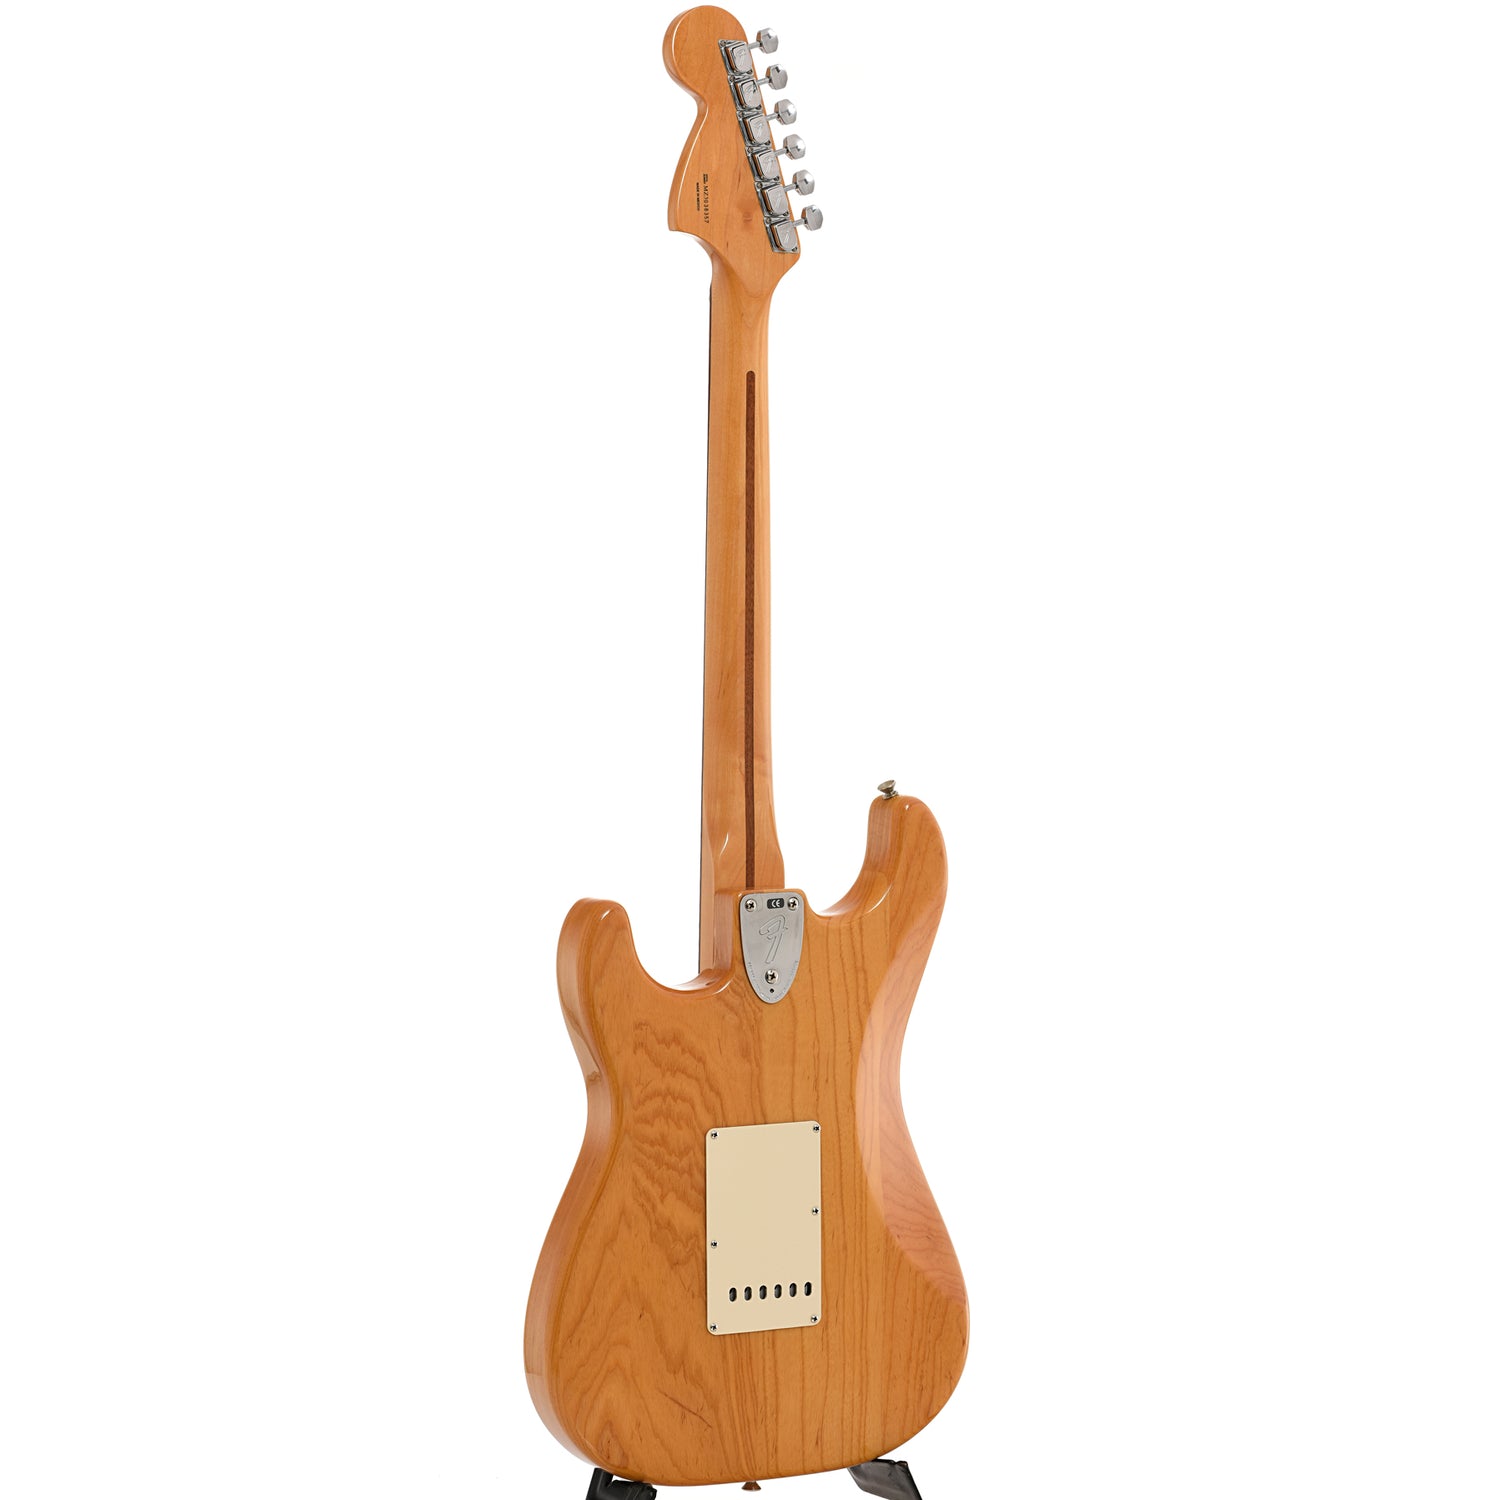 Full back and side of Fender Stratocaster 70s Reissue